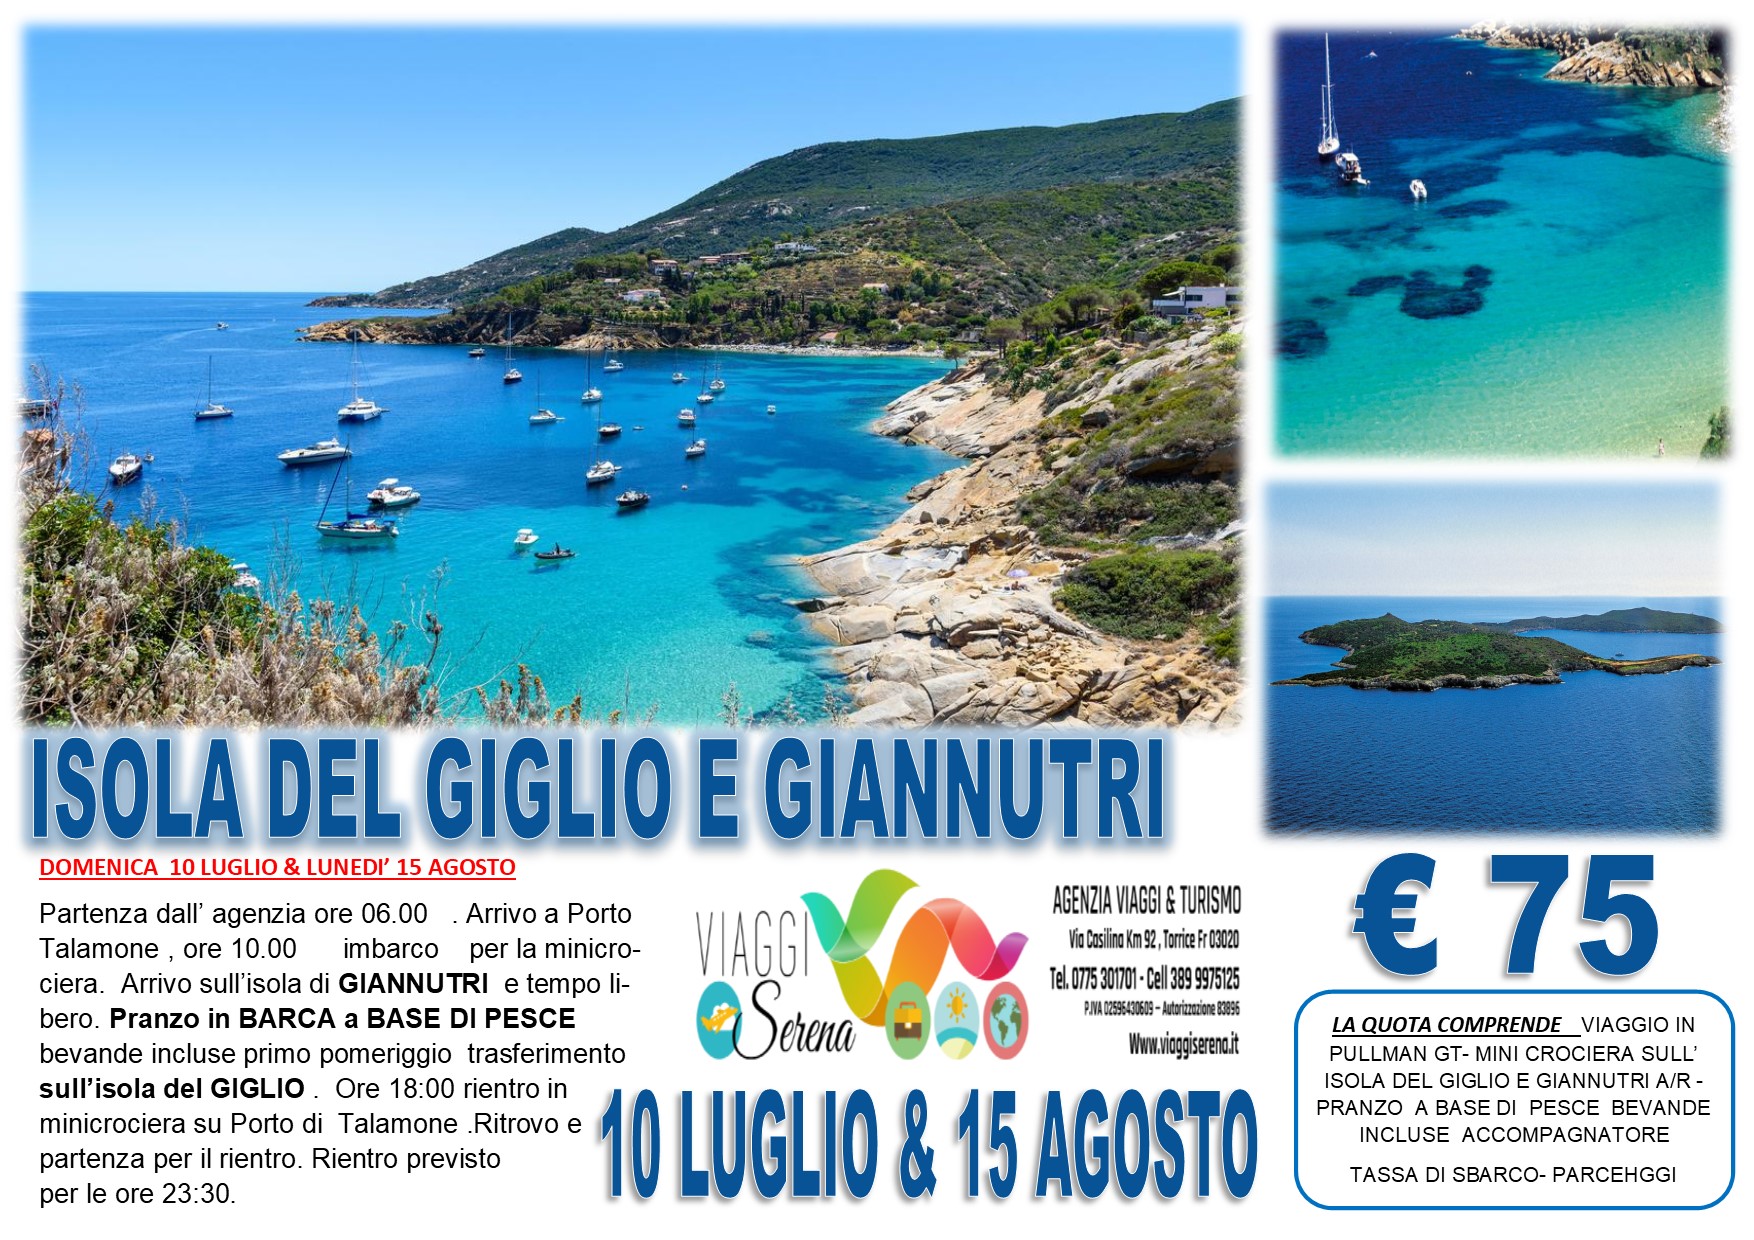 Viaggi di Gruppo: Mini crociera Isola del Giglio & Giannutri 10 Luglio € 75,00